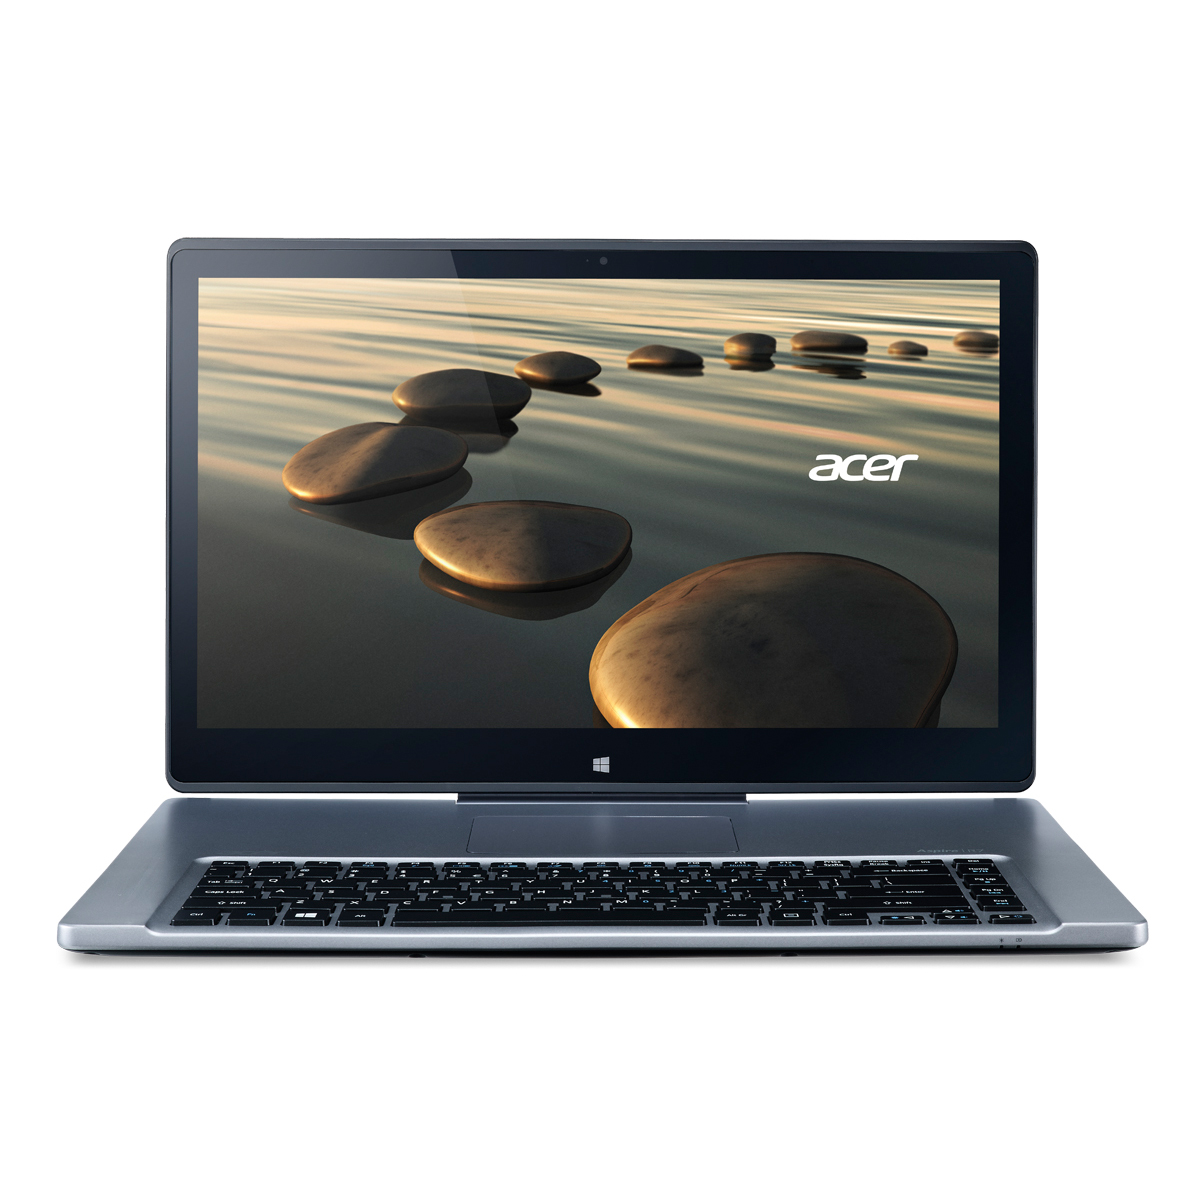 Acer/宏碁 R7-572G R7-572G-54218G1Tass 笔记本电脑 预售 包邮